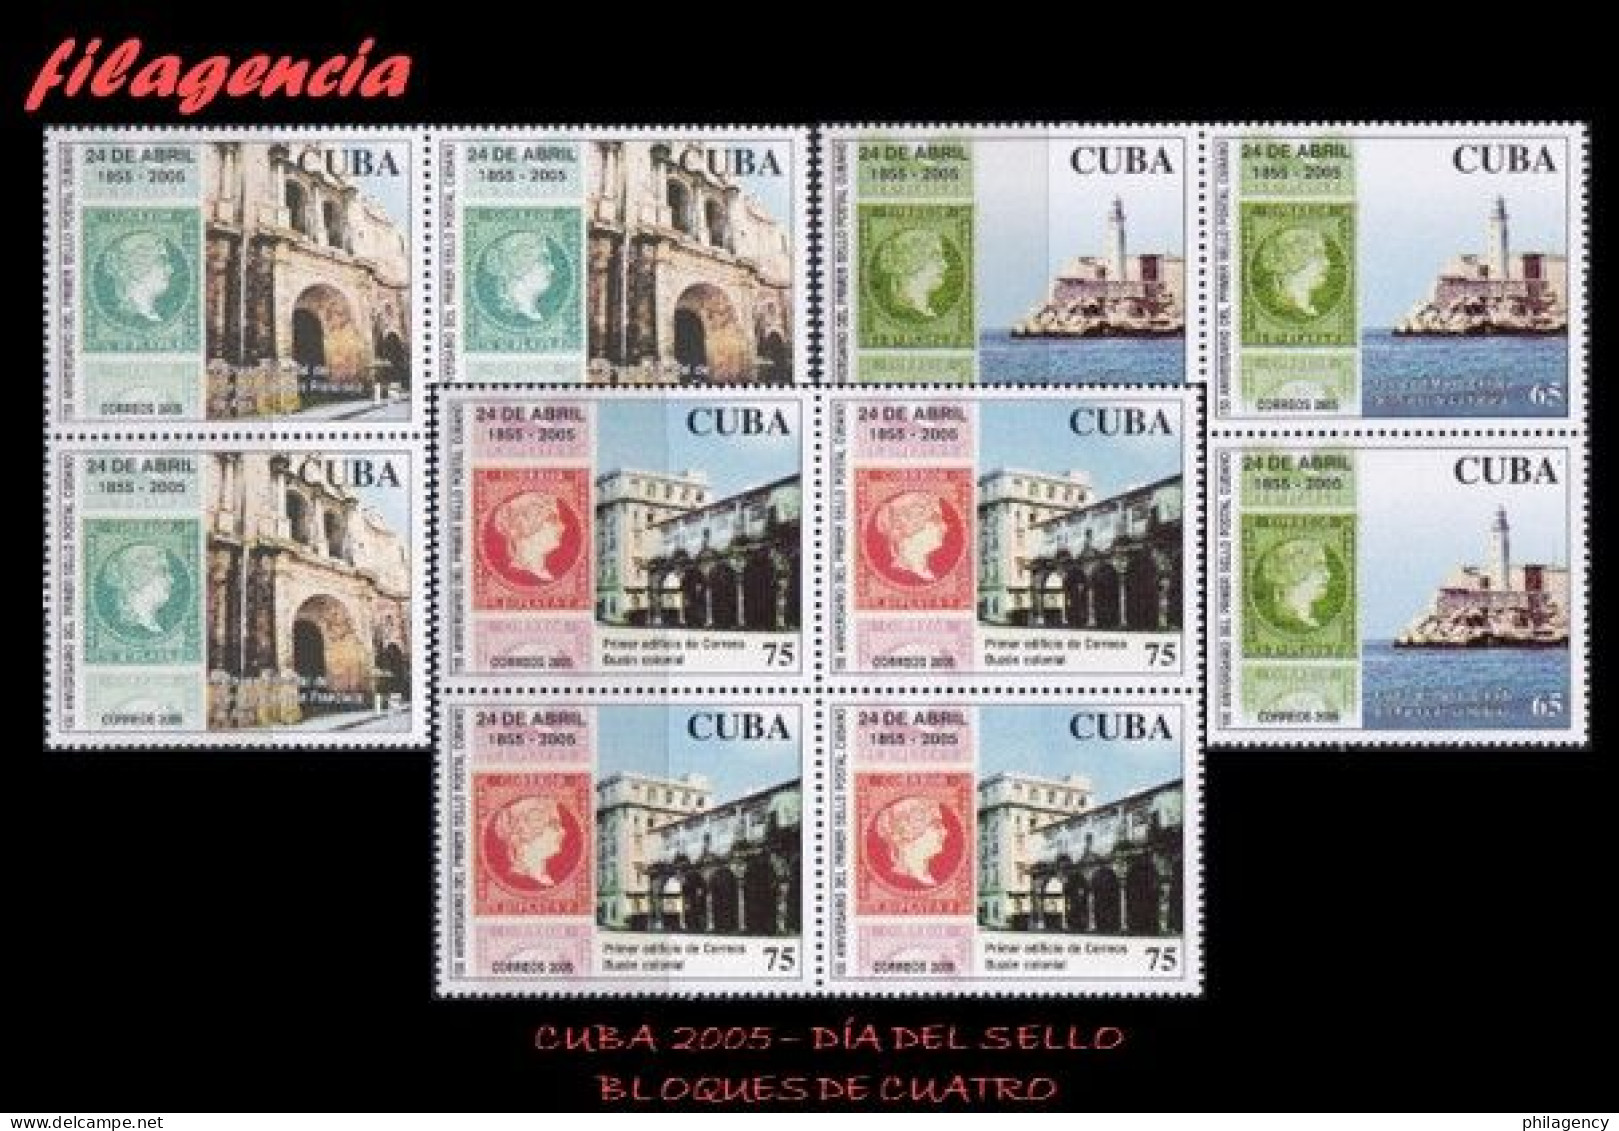 CUBA. BLOQUES DE CUATRO. 2005-14 DÍA DEL SELLO CUBANO. PRIMERA EMISIÓN DE SELLOS CIRCULADOS EN CUBA - Unused Stamps